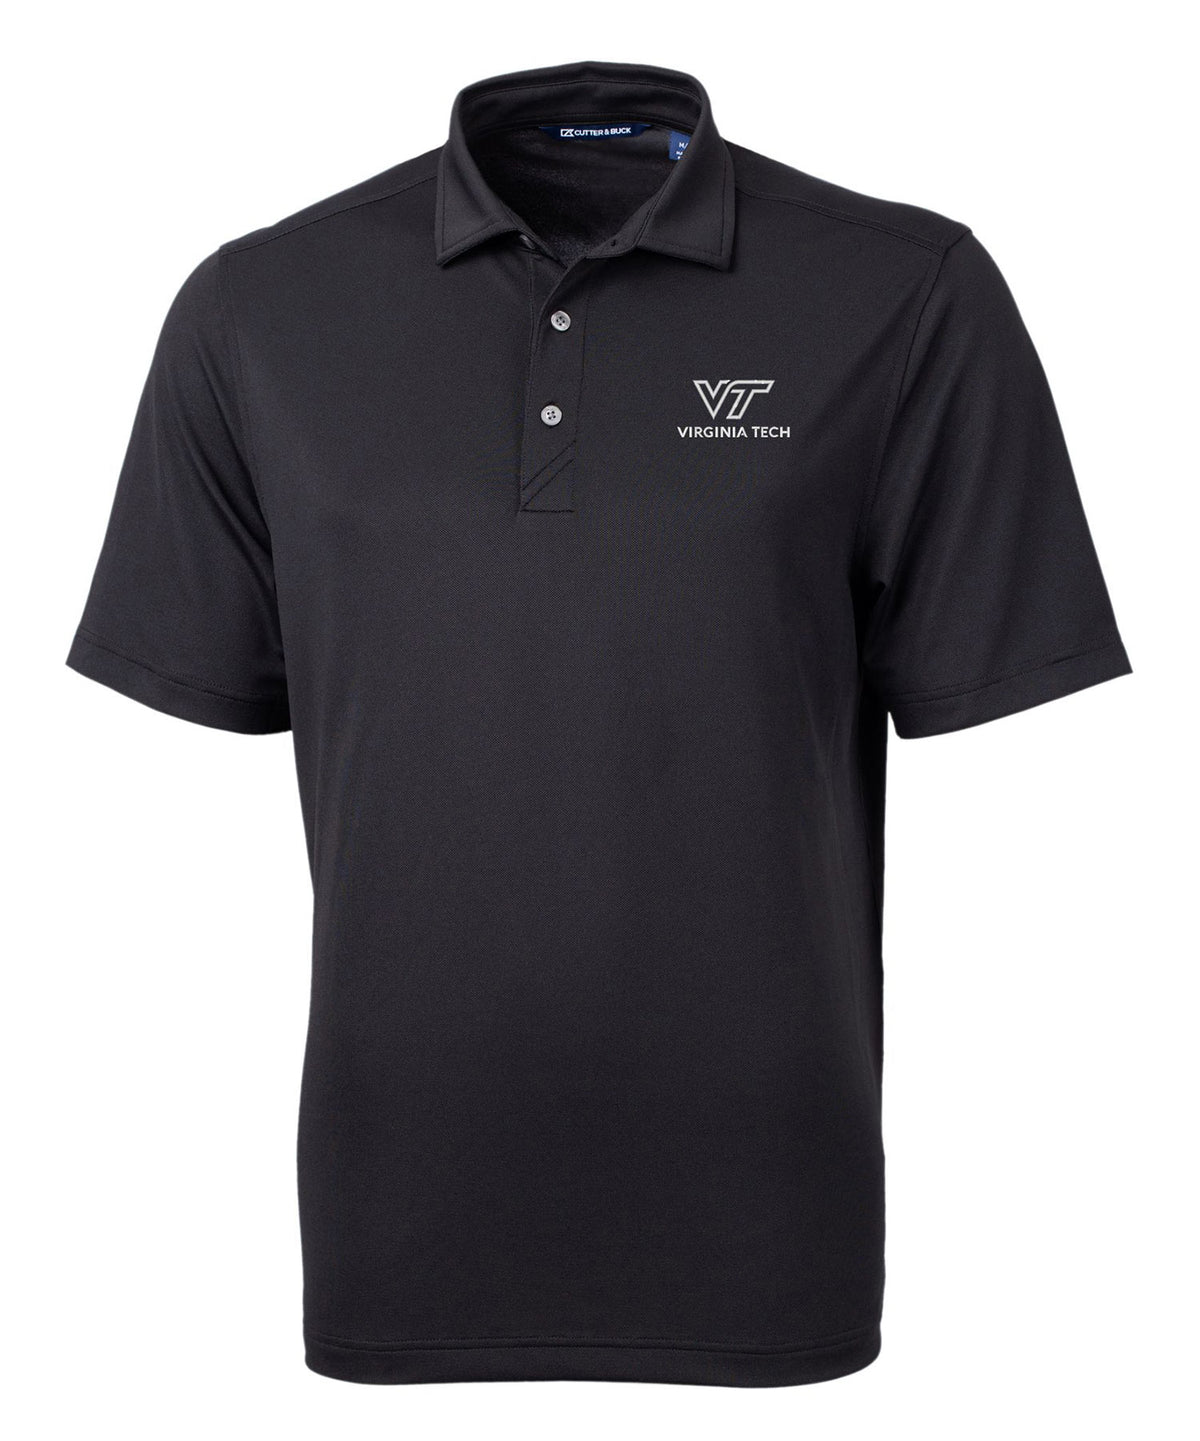 Cutter & Buck Virginia Tech Hokies Short Sleeve Polo Knit Shirt, Men's Big & Tall